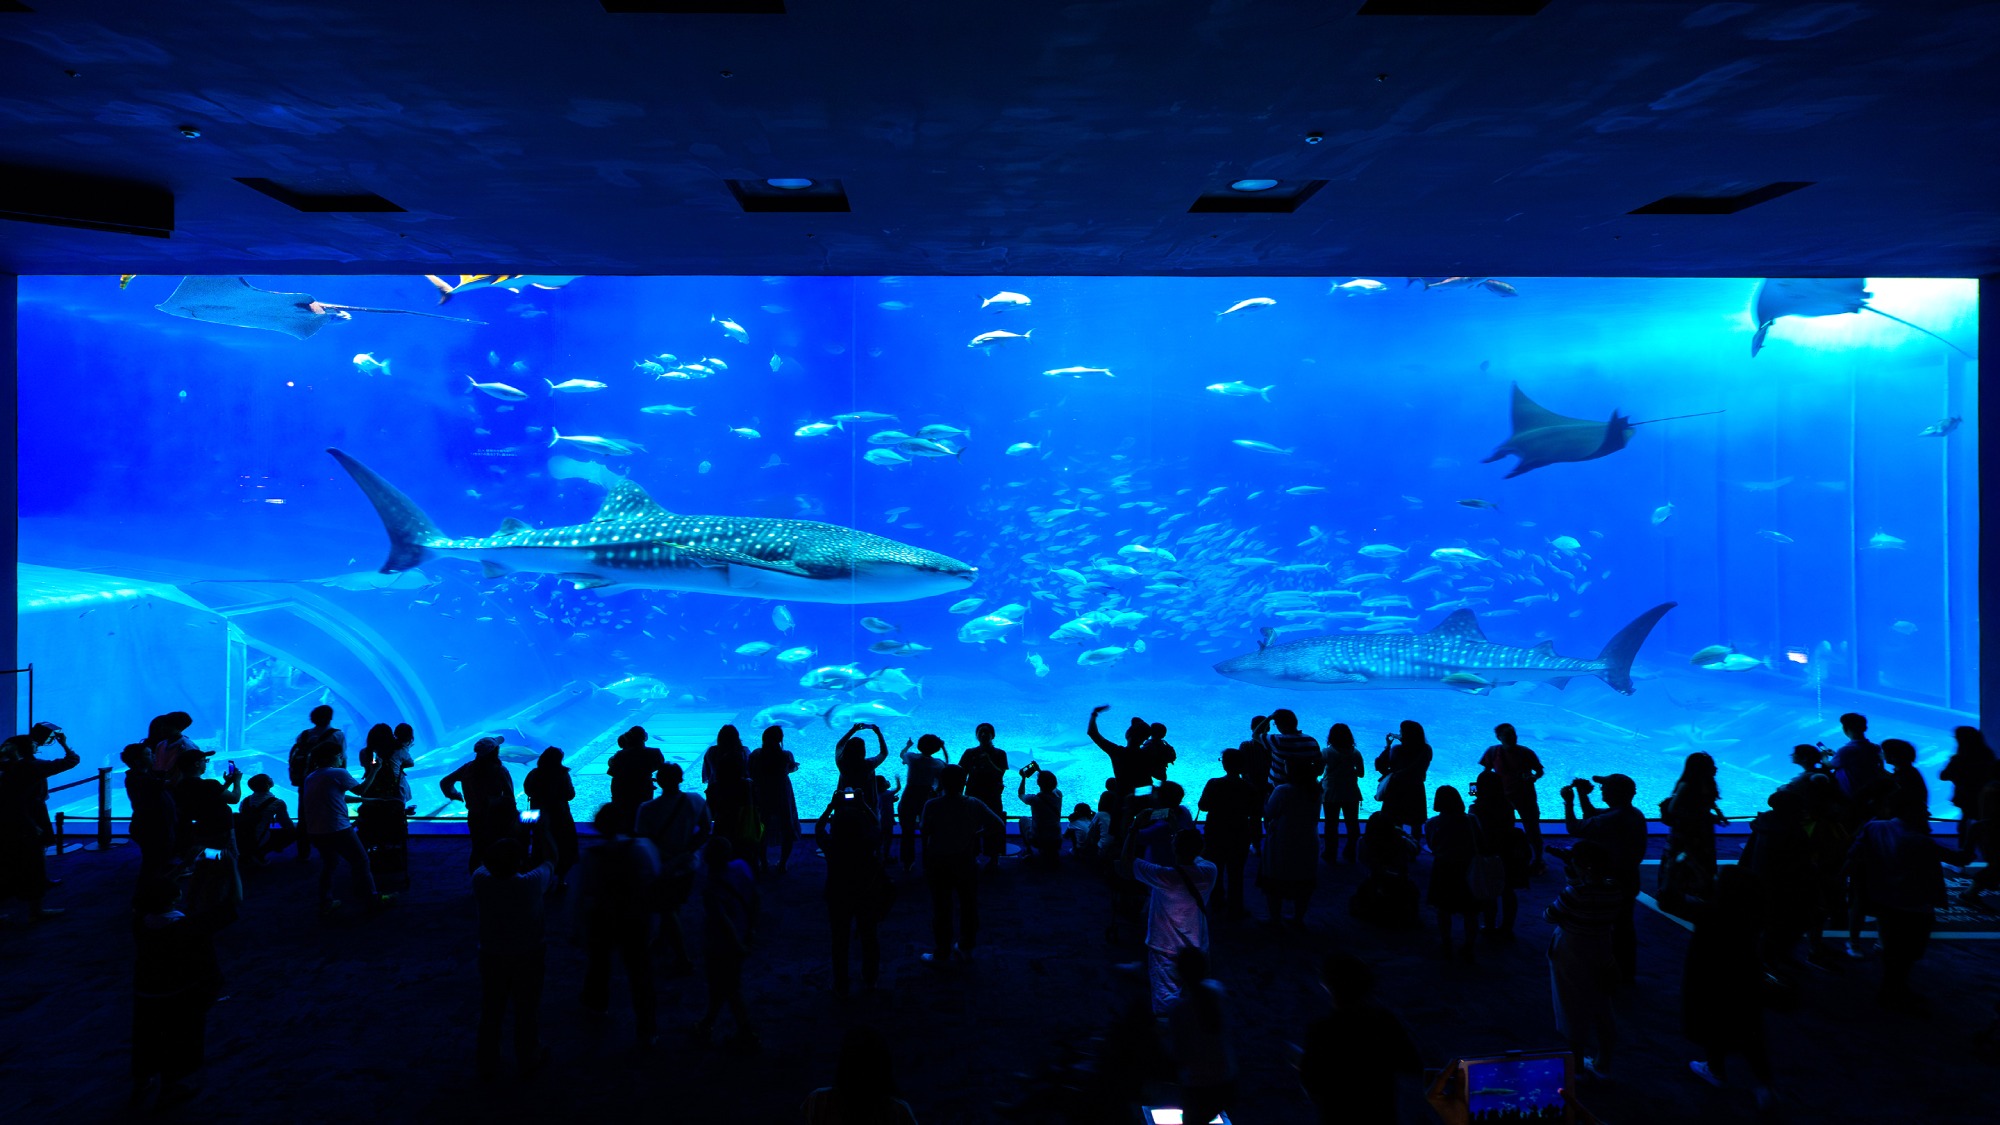 ・【美ら海水族館】ジンベエザメやナンヨウマンタをはじめとする魚たちの群泳をご覧いただけます